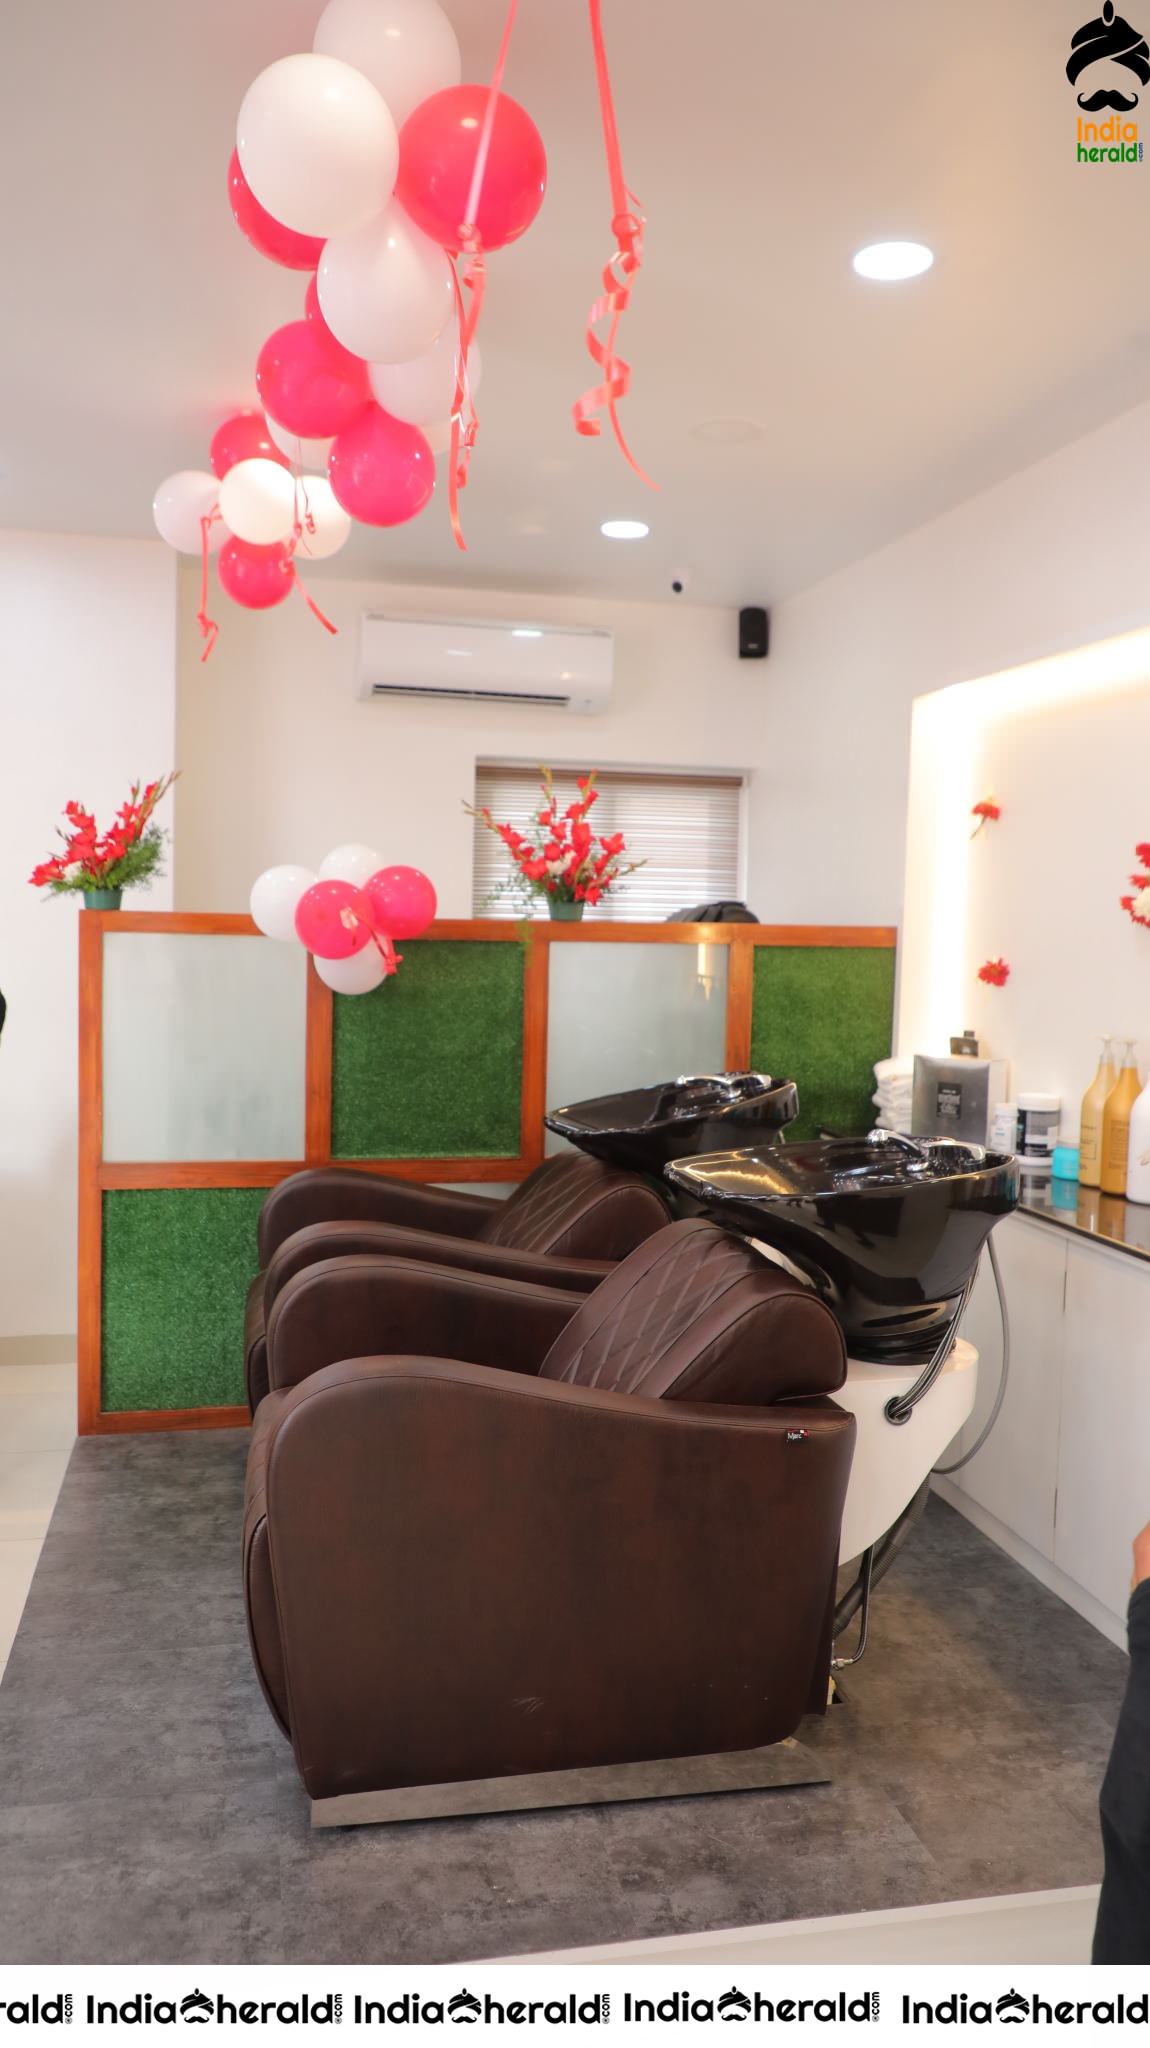 Lahari Launched Habibs Hair and Beauty Salon Launched At Madinaguda Set 1